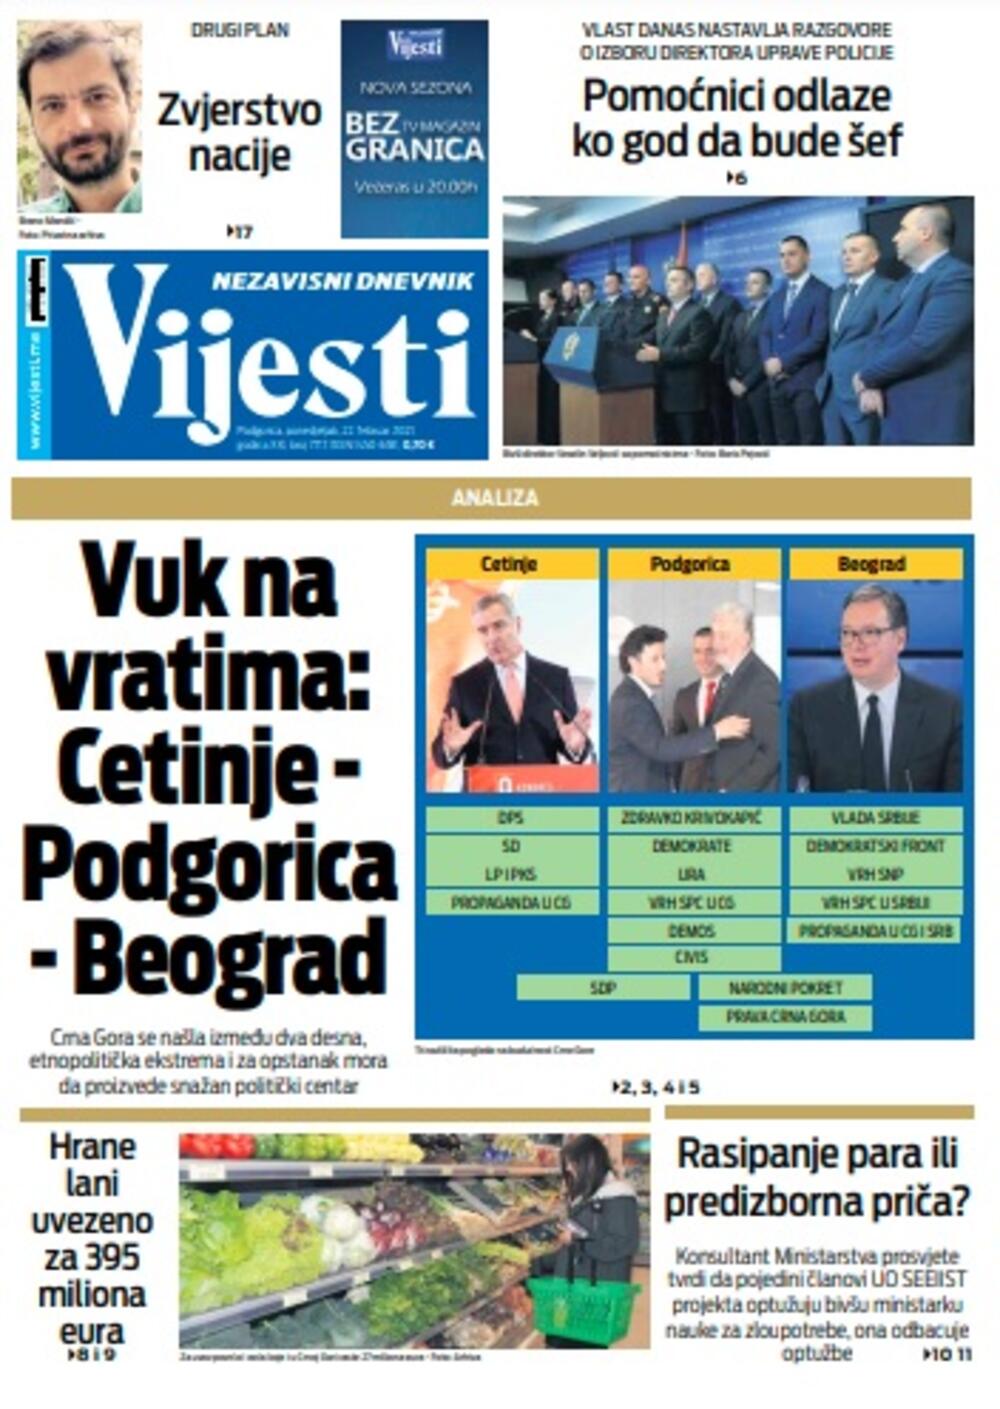 Naslovna strana "Vijesti" za ponedjeljak 22. februar 2021. godine, Foto: Vijesti